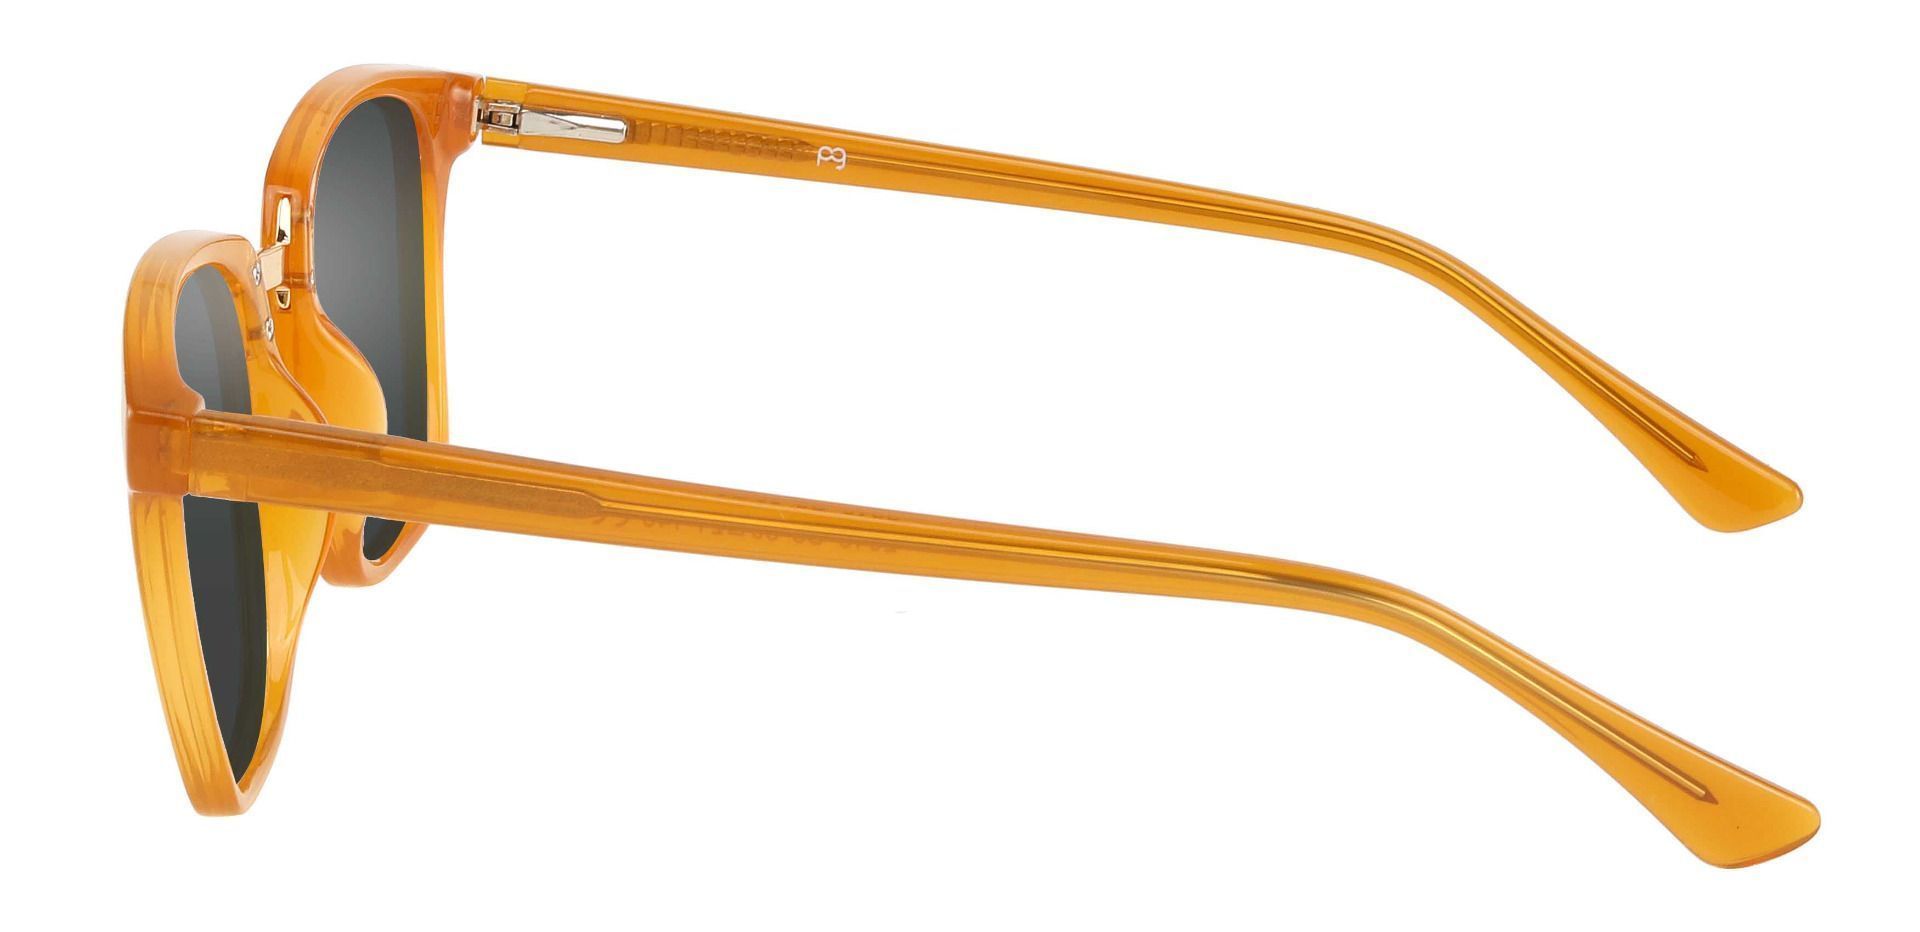 Delta Square Progressive Sunglasses - Orange Frame With Gray Lenses